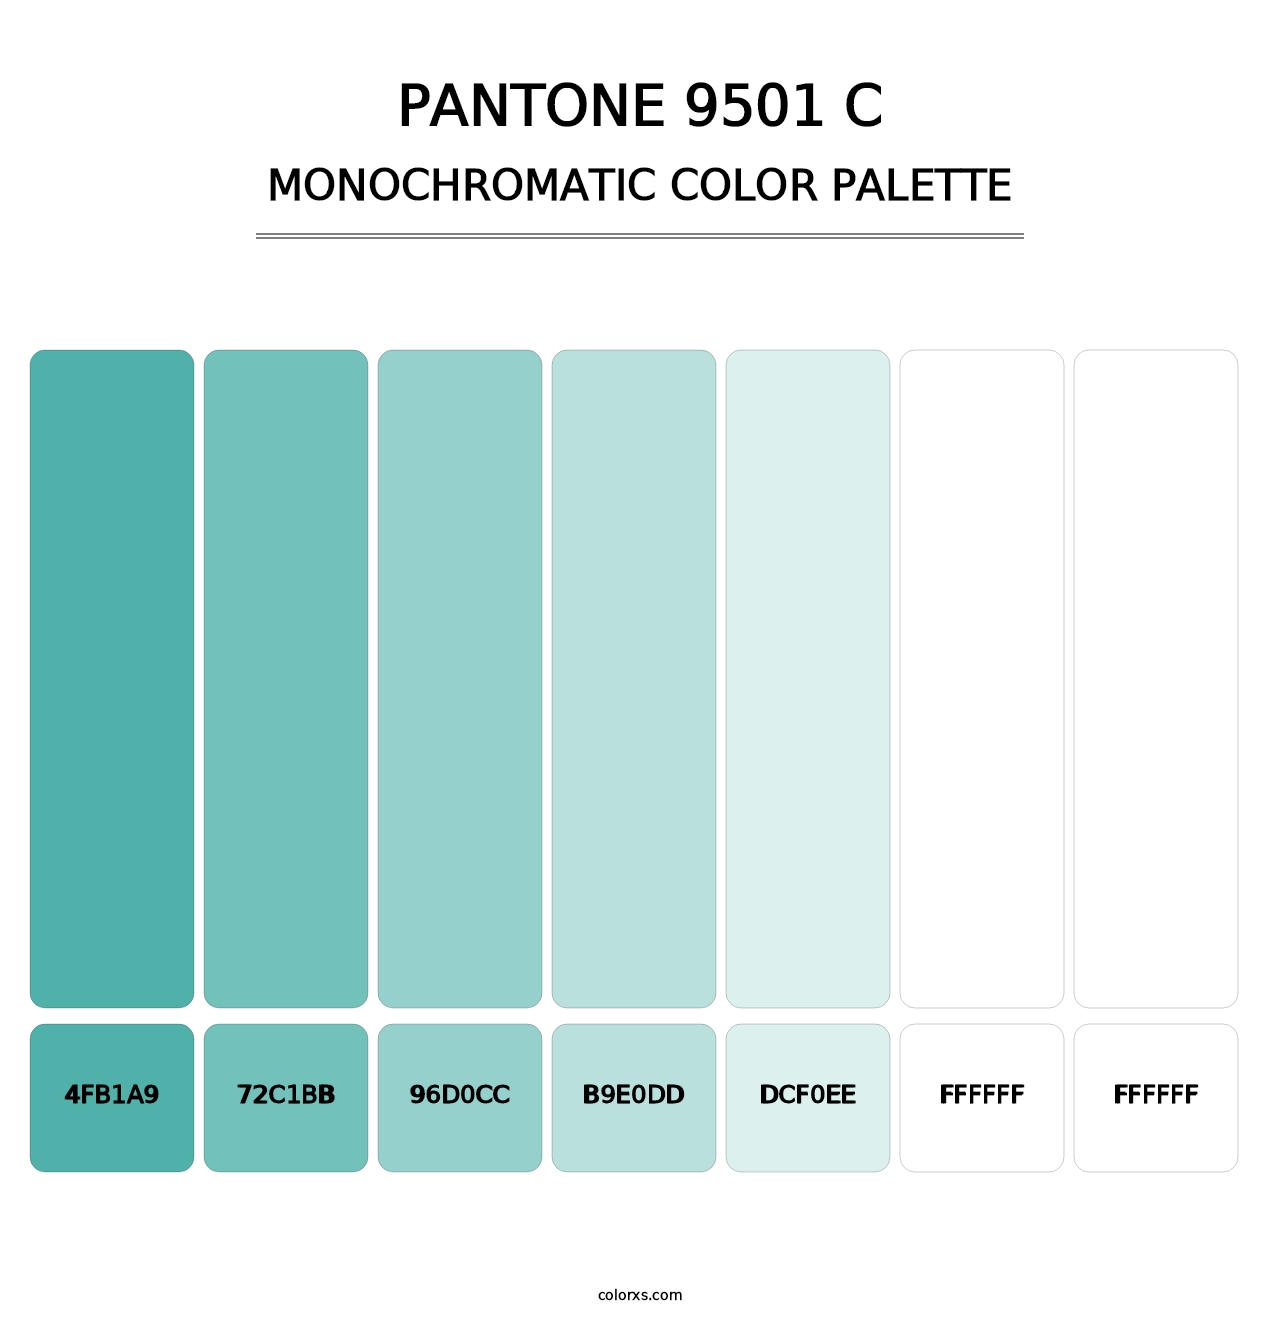 PANTONE 9501 C - Monochromatic Color Palette